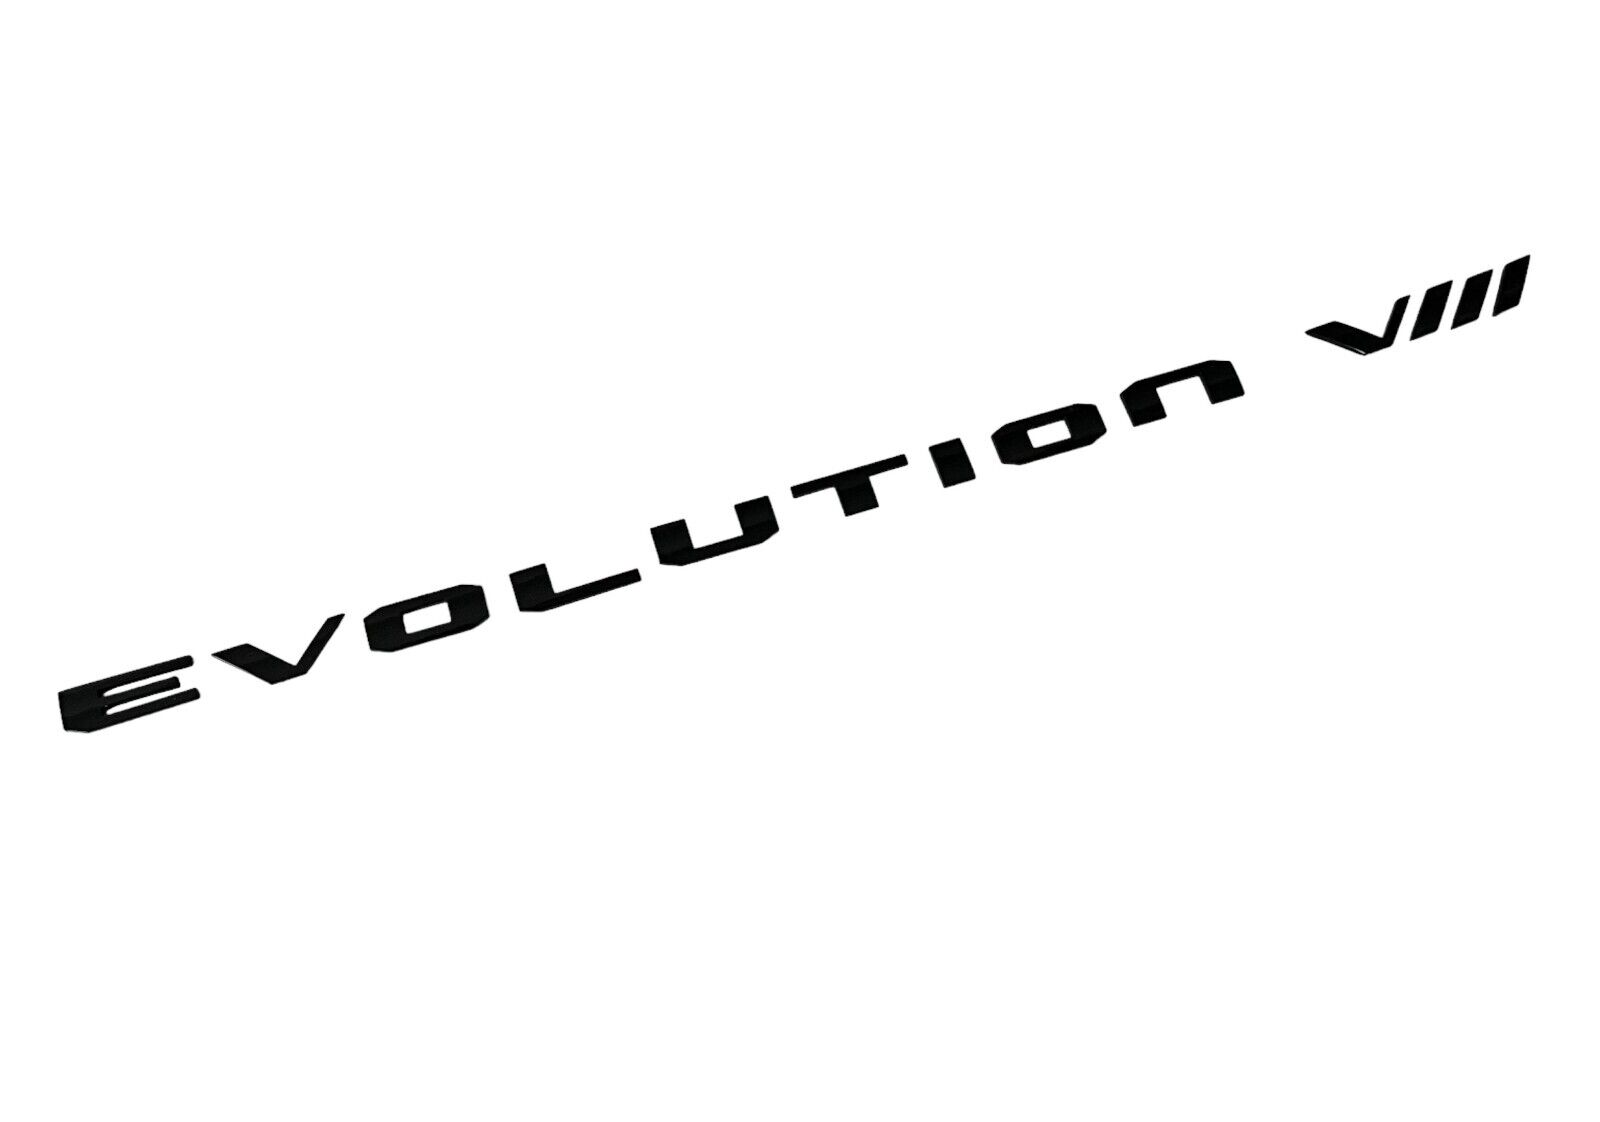 TRUNK LID BADGE EMBLEM FOR MITSUBISHI LANCER EVO EVOLUTION VIII 8 LETTERS BLACK